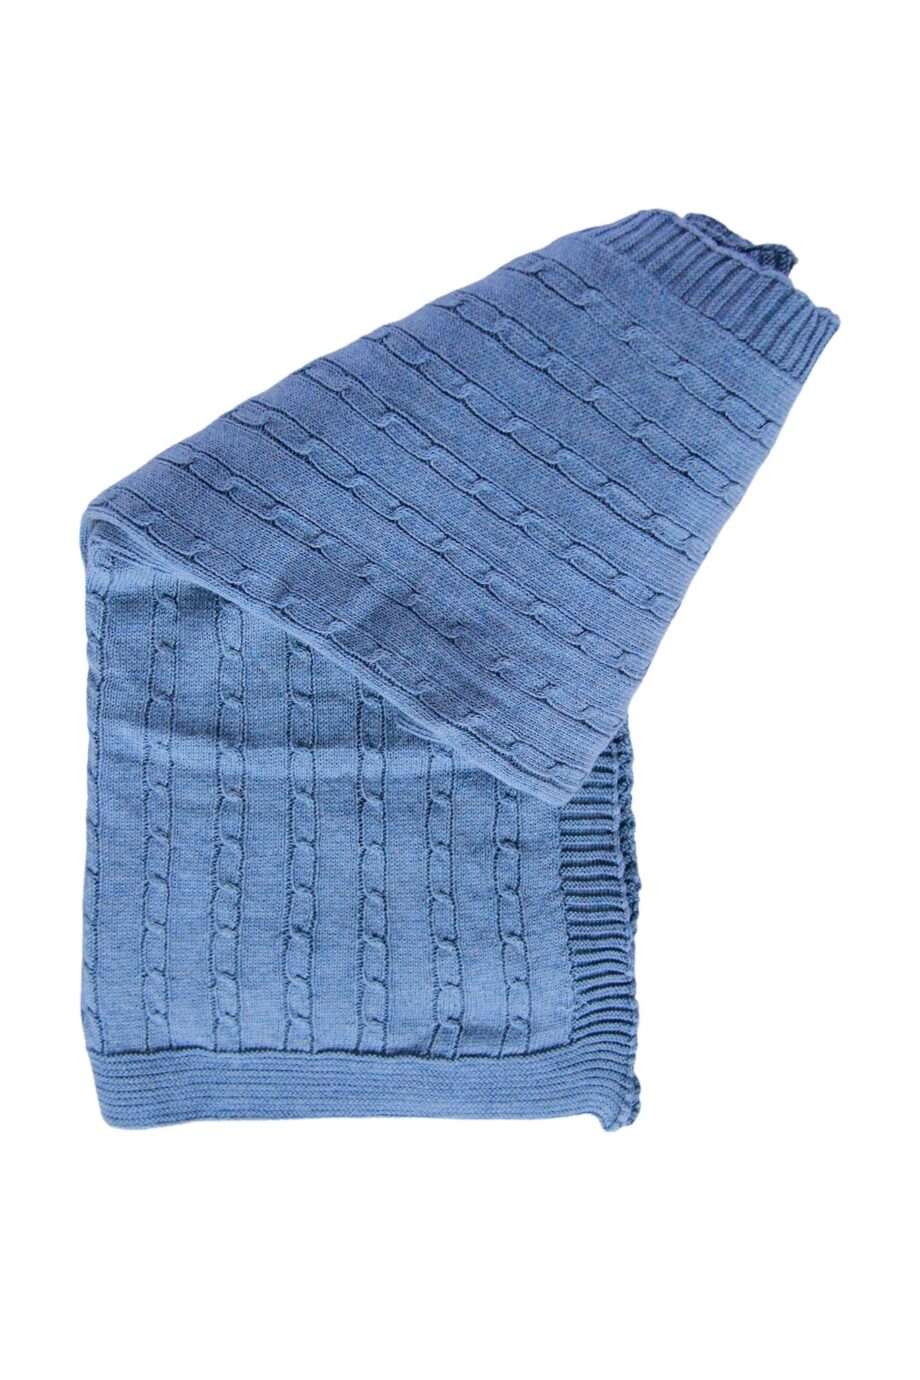 blanket twist small jeans blue medium